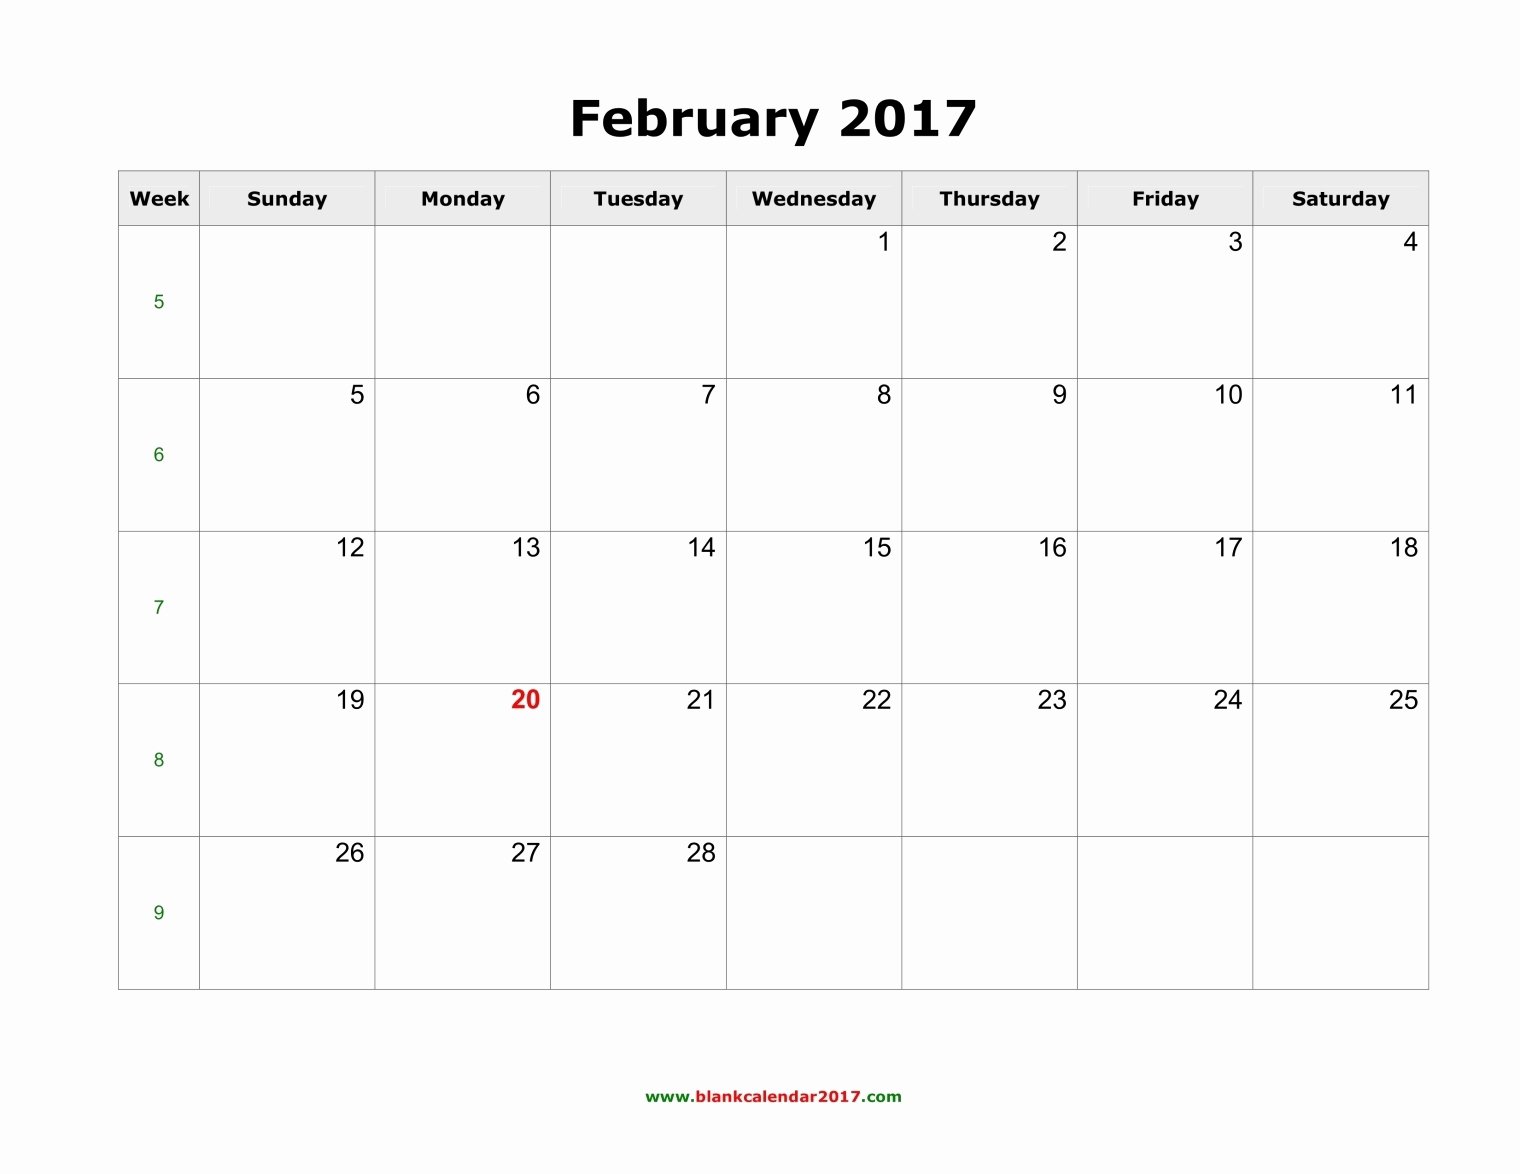 February 2017 Calendar Excel